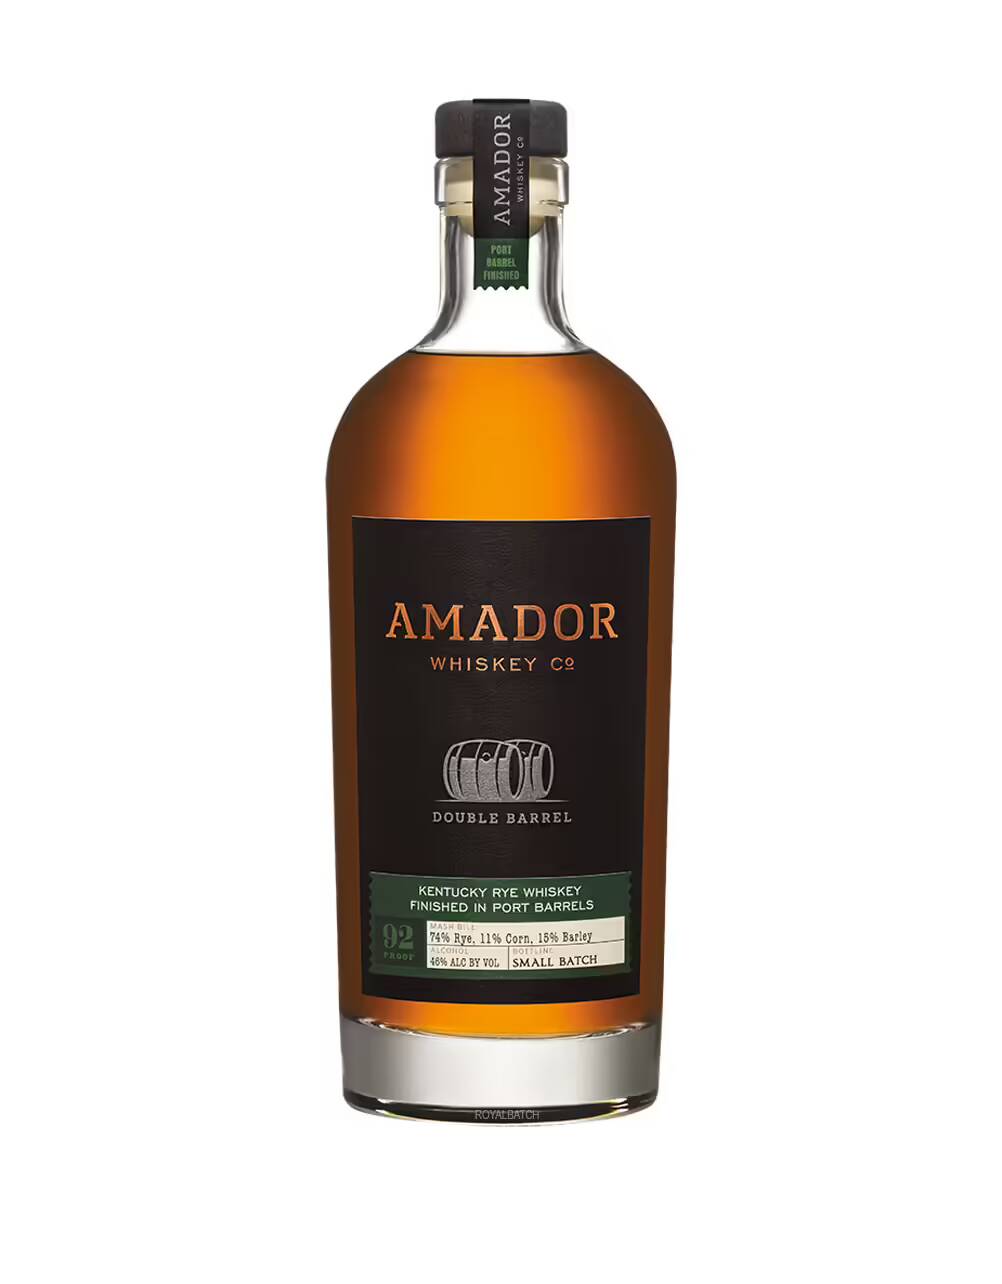 Amador Double Barrel Kentucky Rye Whiskey